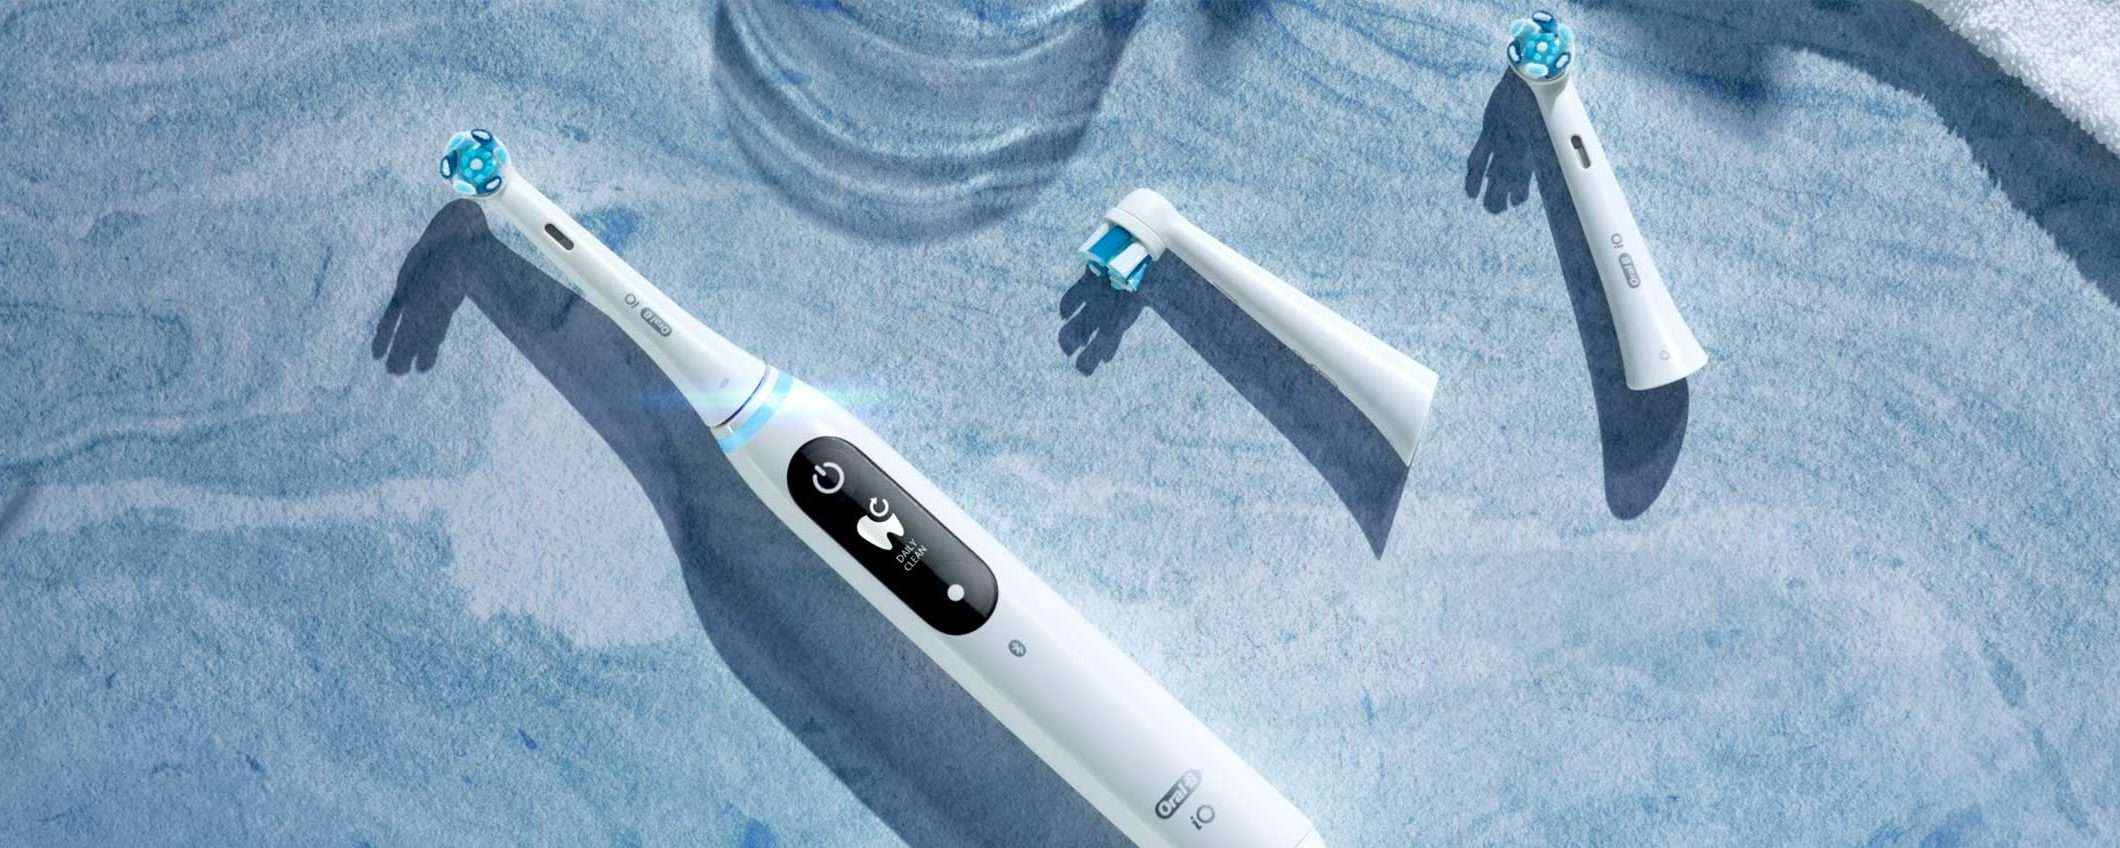 Intelligenza artificiale per lo spazzolino elettrico Oral-B iO 6N